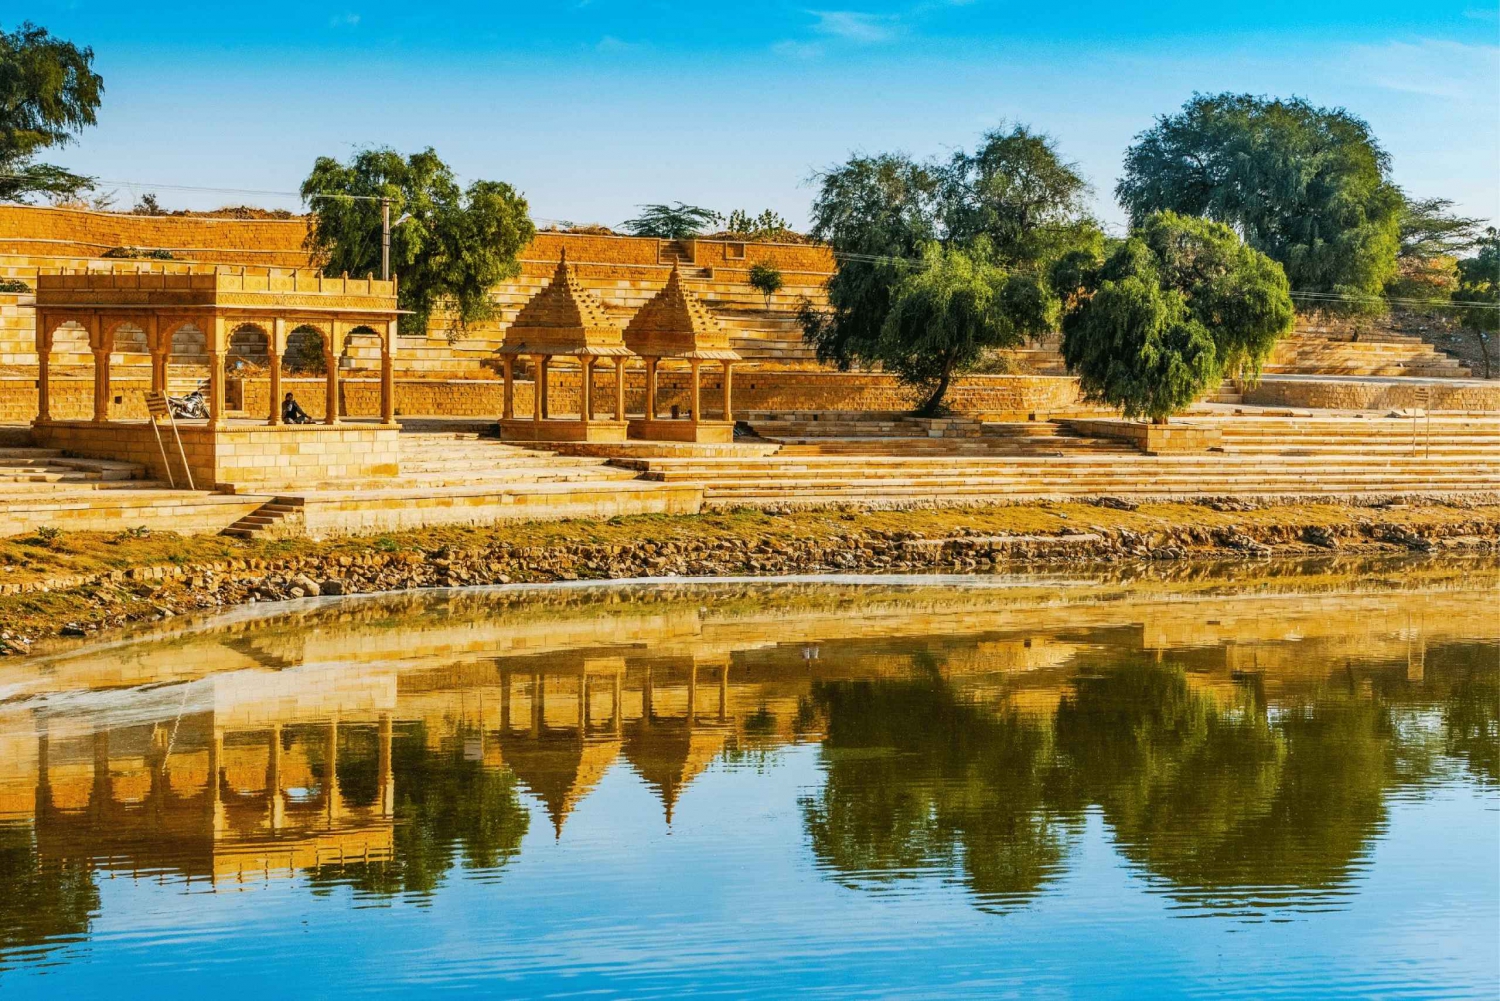 Percorsi storici e culturali di Jaisalmer: tour guidato a piedi